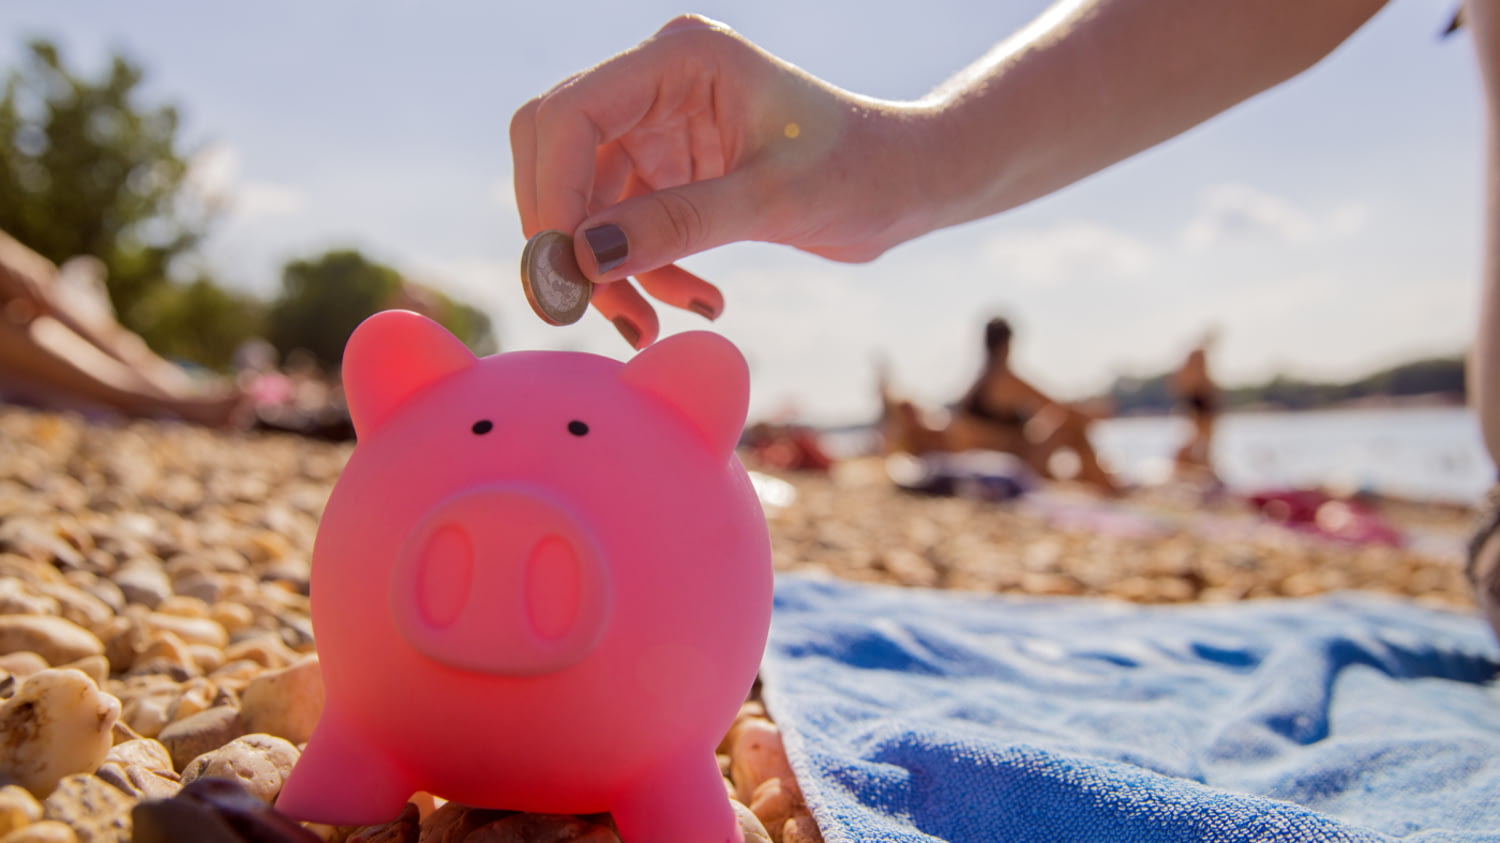 Frau am Strand steckt einen Euro in ein rosafarbenes Sparschwein